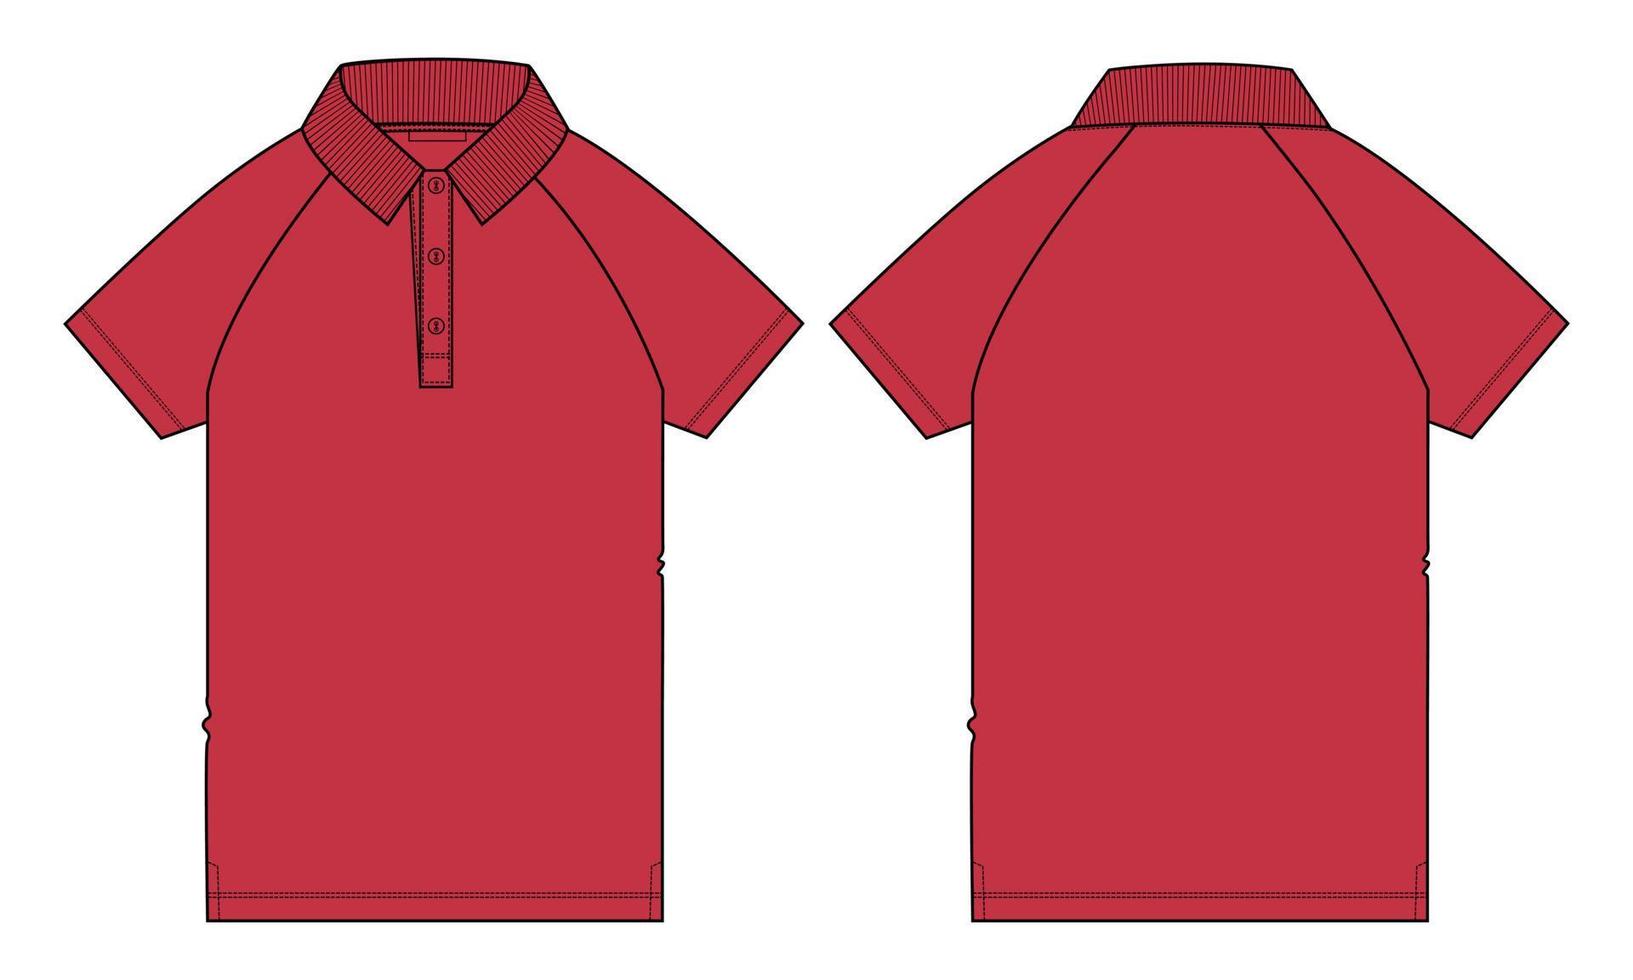 camisa polo raglan de manga curta técnica de moda plana esboço ilustração vetorial modelo de cor vermelha vistas frontal e traseira. vetor